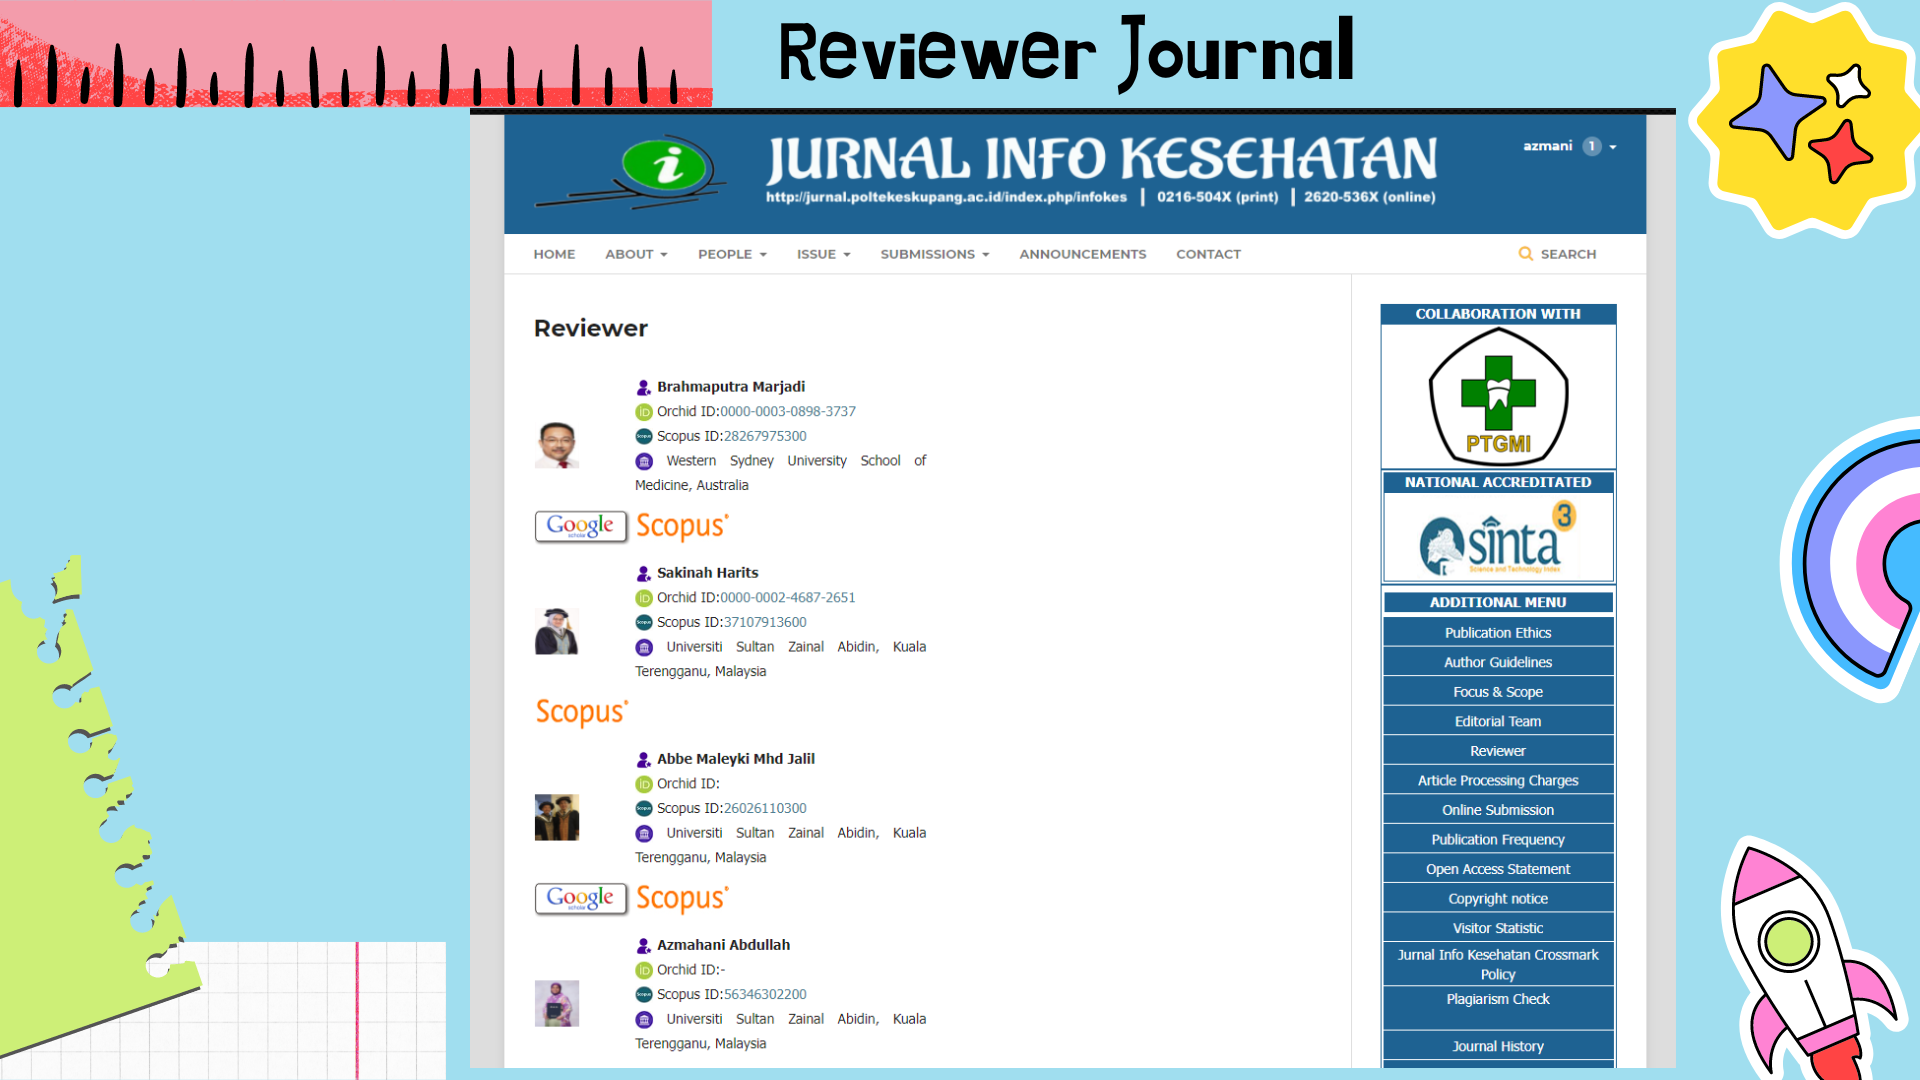 Reviewer Journal